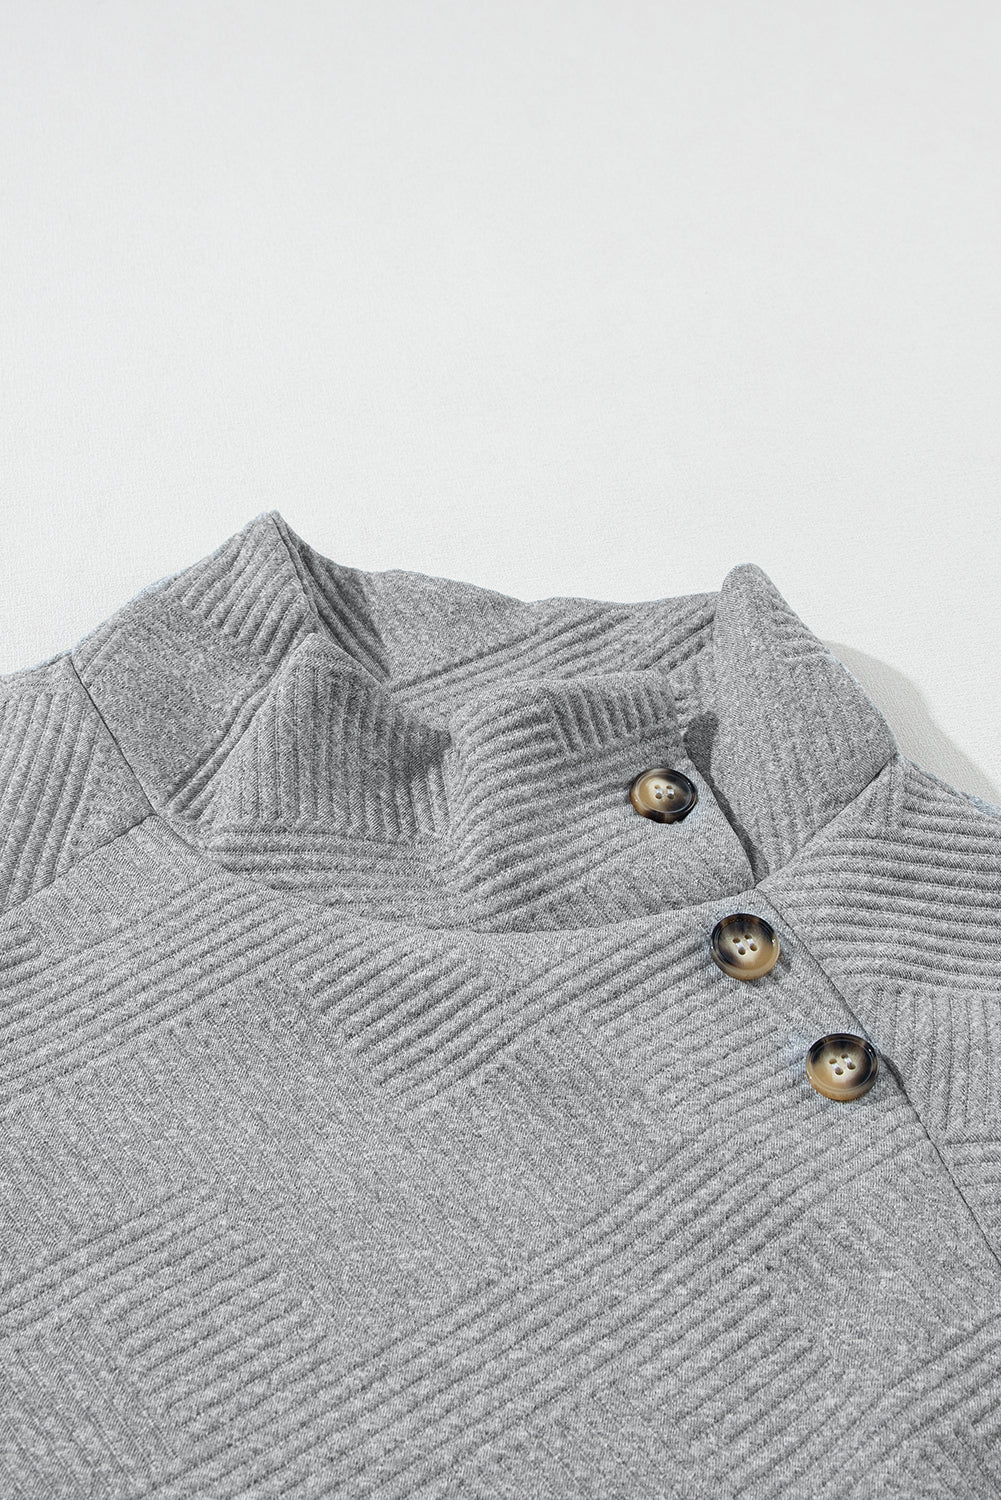 Schwarzes, strukturiertes Sweatshirt mit asymmetrischem Knopfdetail und hohem Kragen